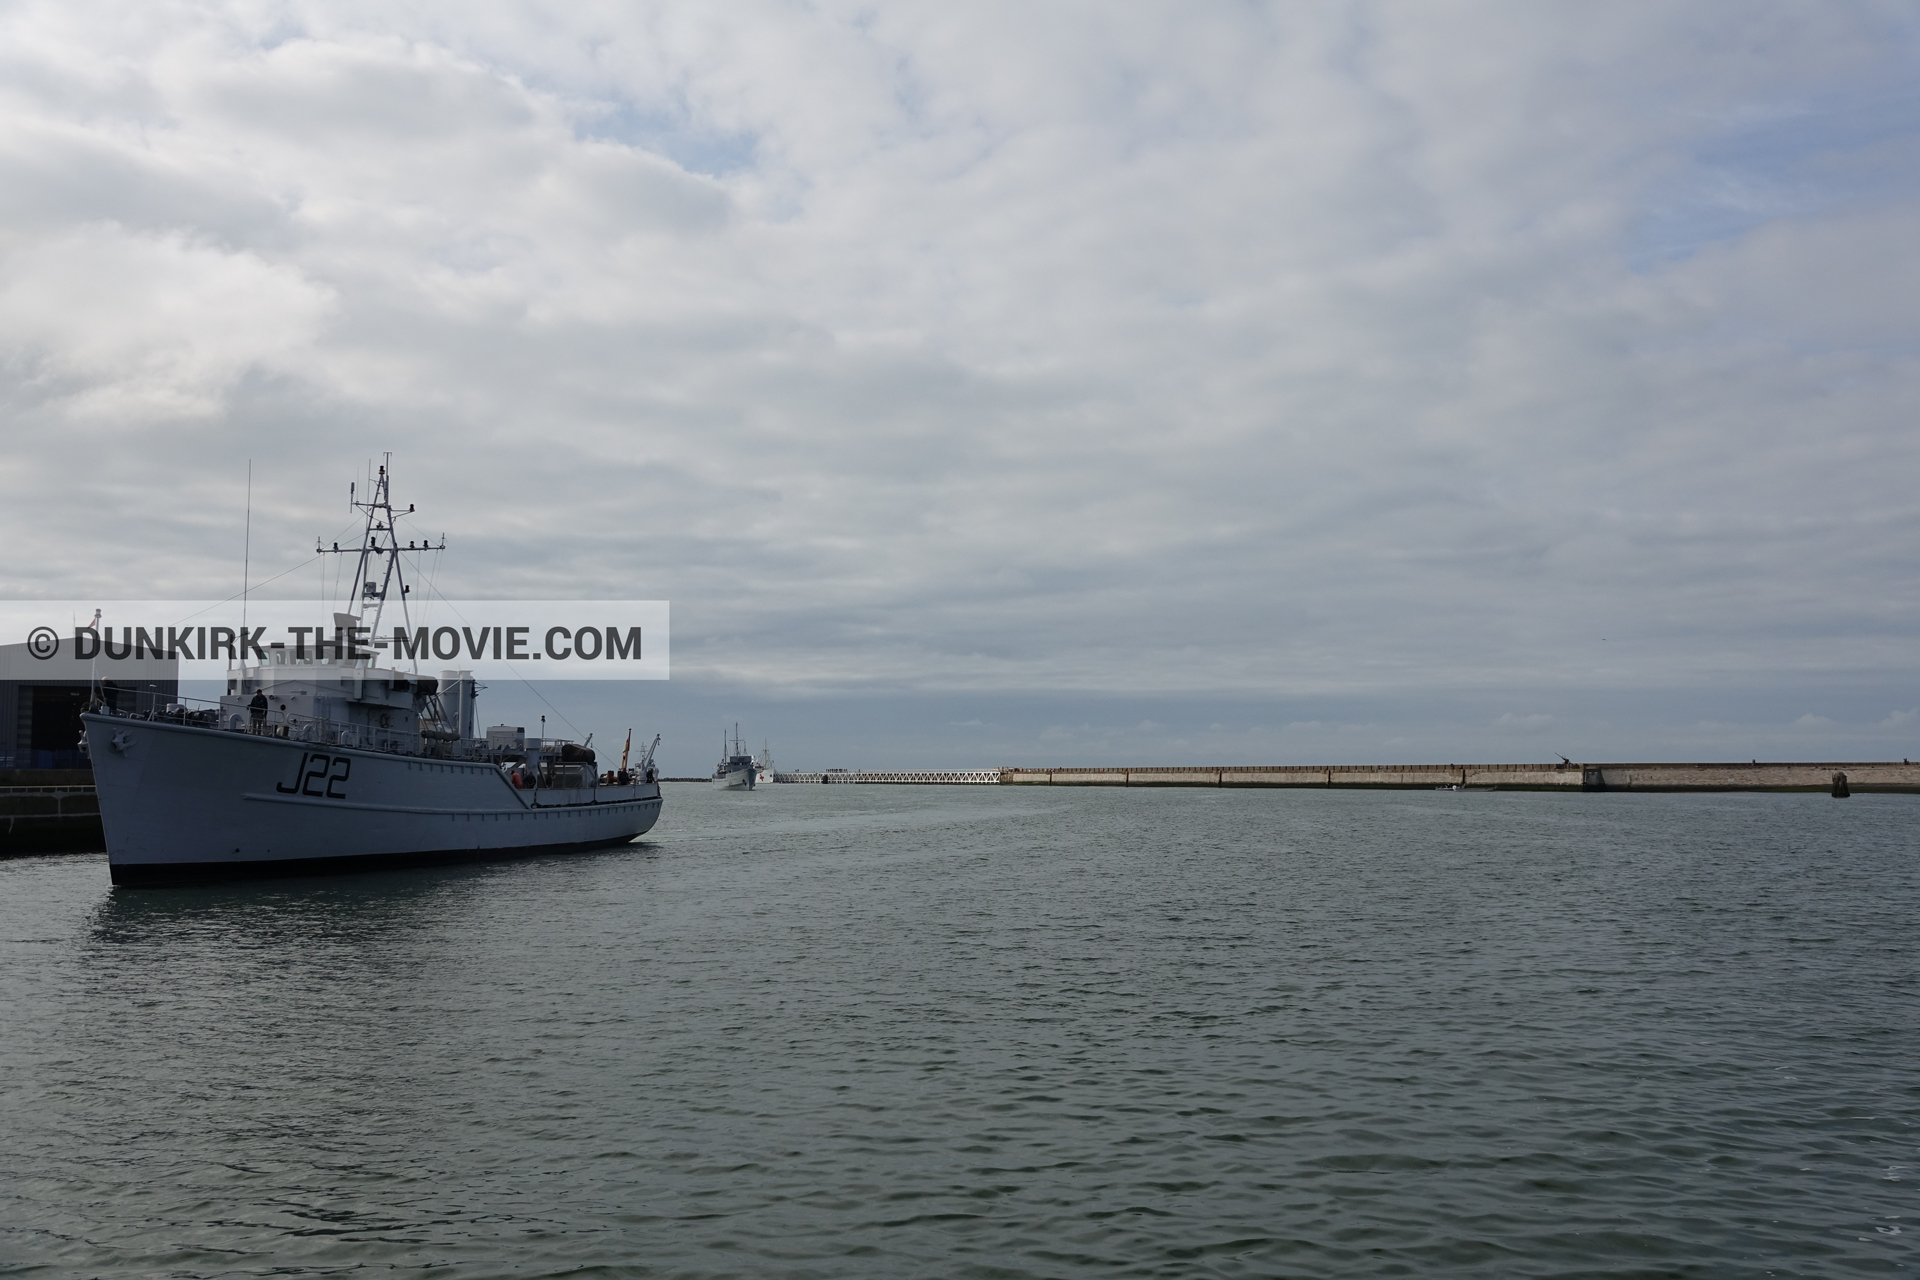 Fotos con cielo nublado, J22 -Hr.Ms. Naaldwijk, muelle del ESTE, mares calma,  durante el rodaje de la película Dunkerque de Nolan